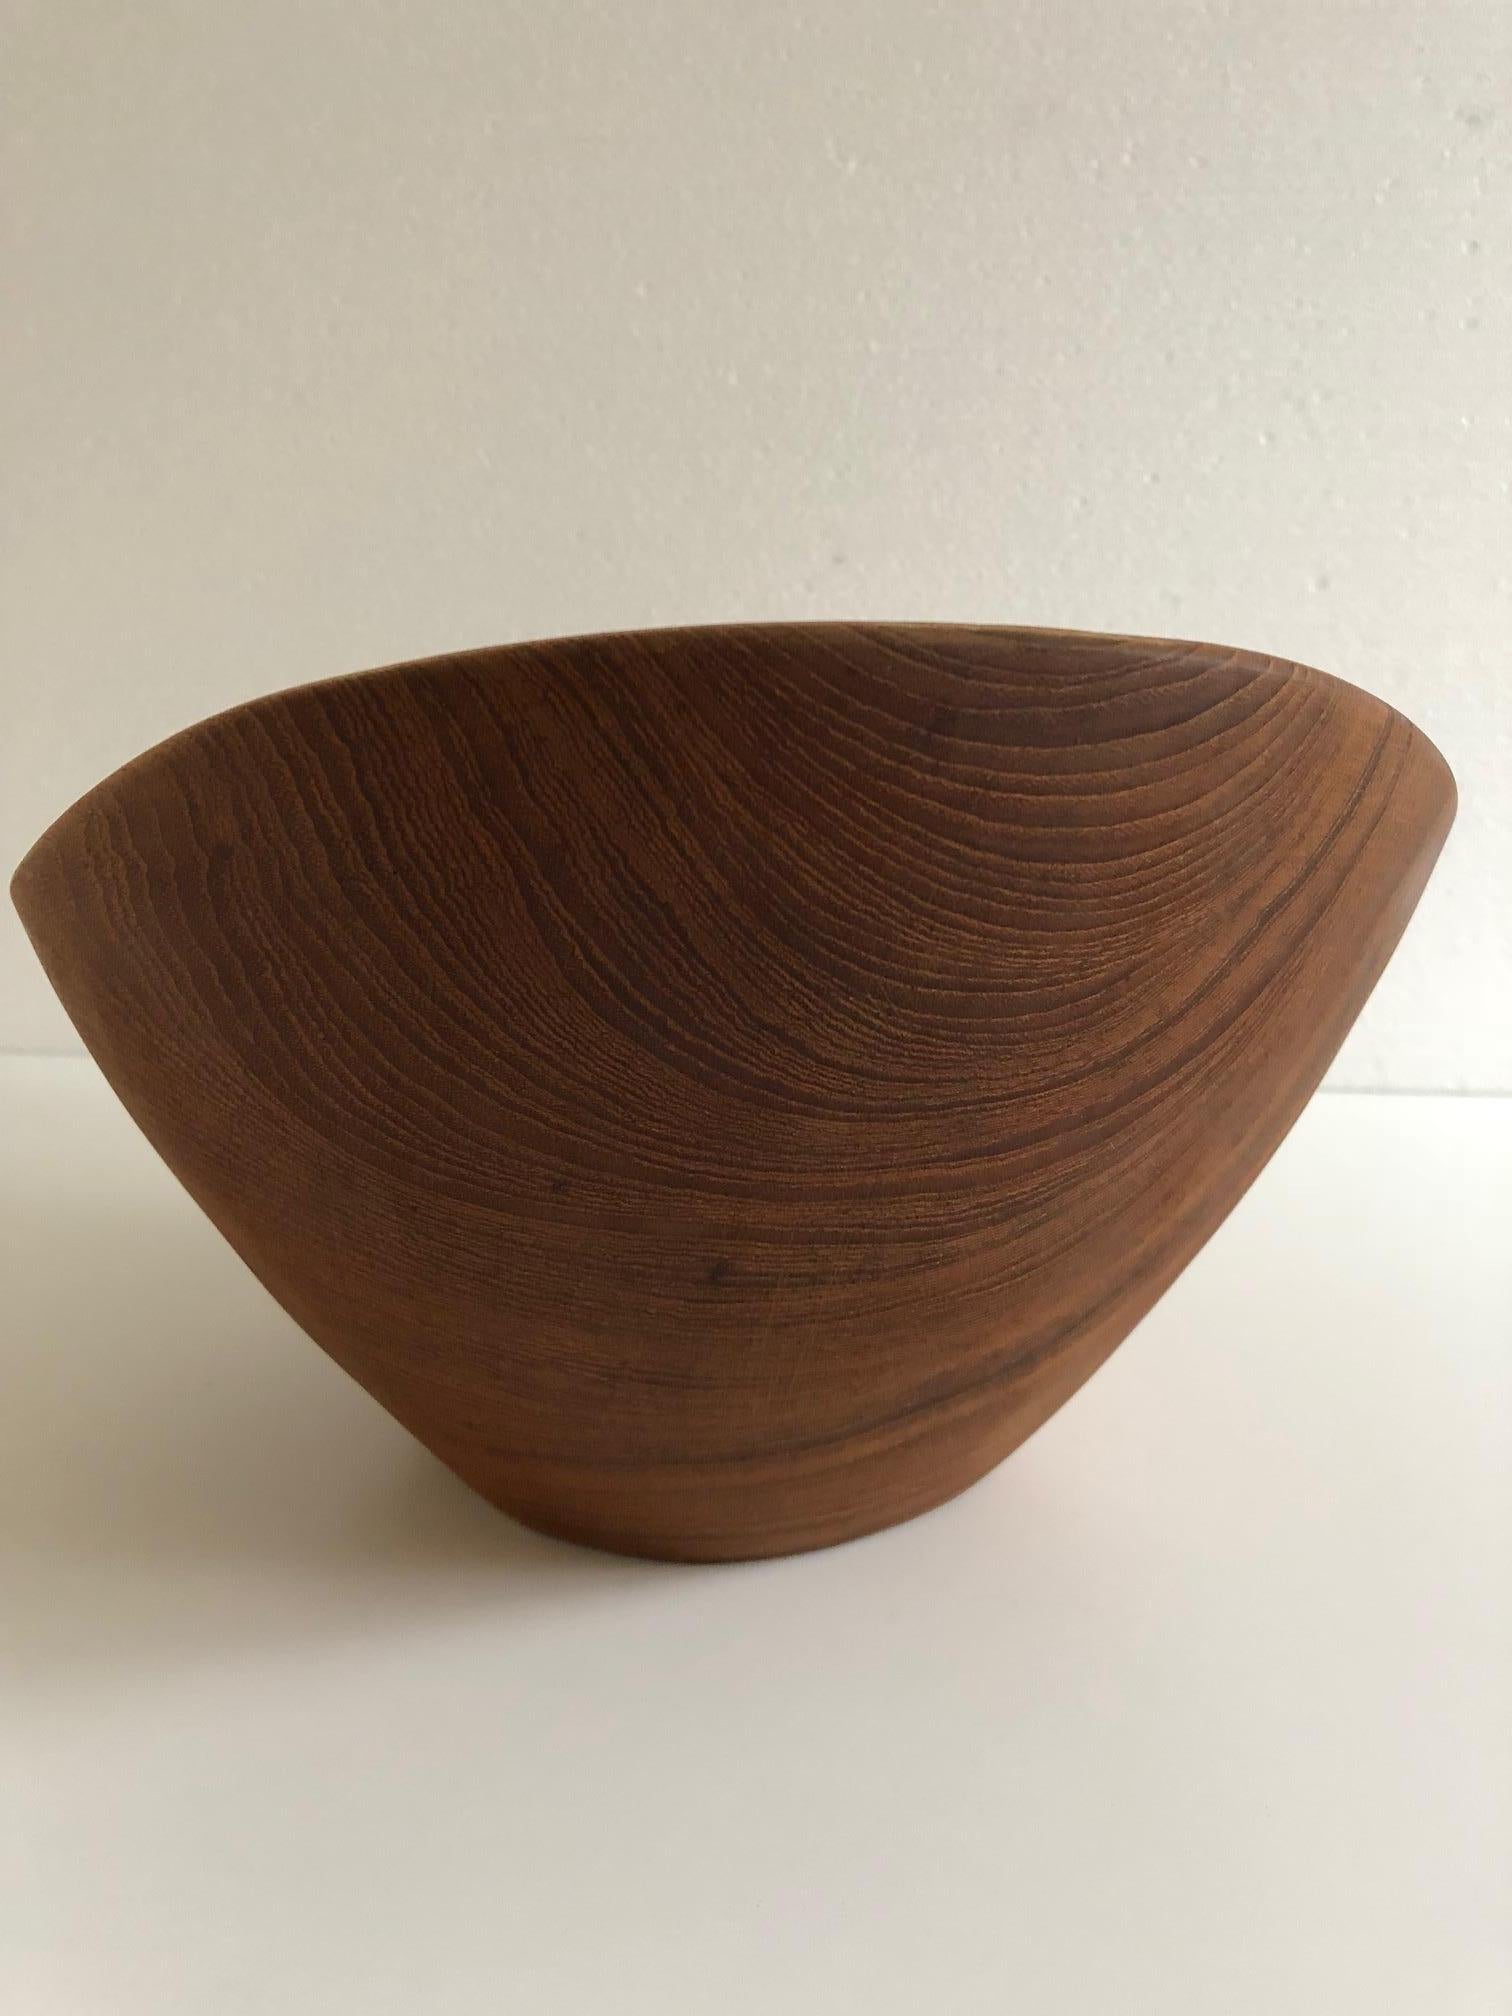 Scandinavian Modern Large Organic Shaped Teak Bowl from Denmark, 1960s For Sale